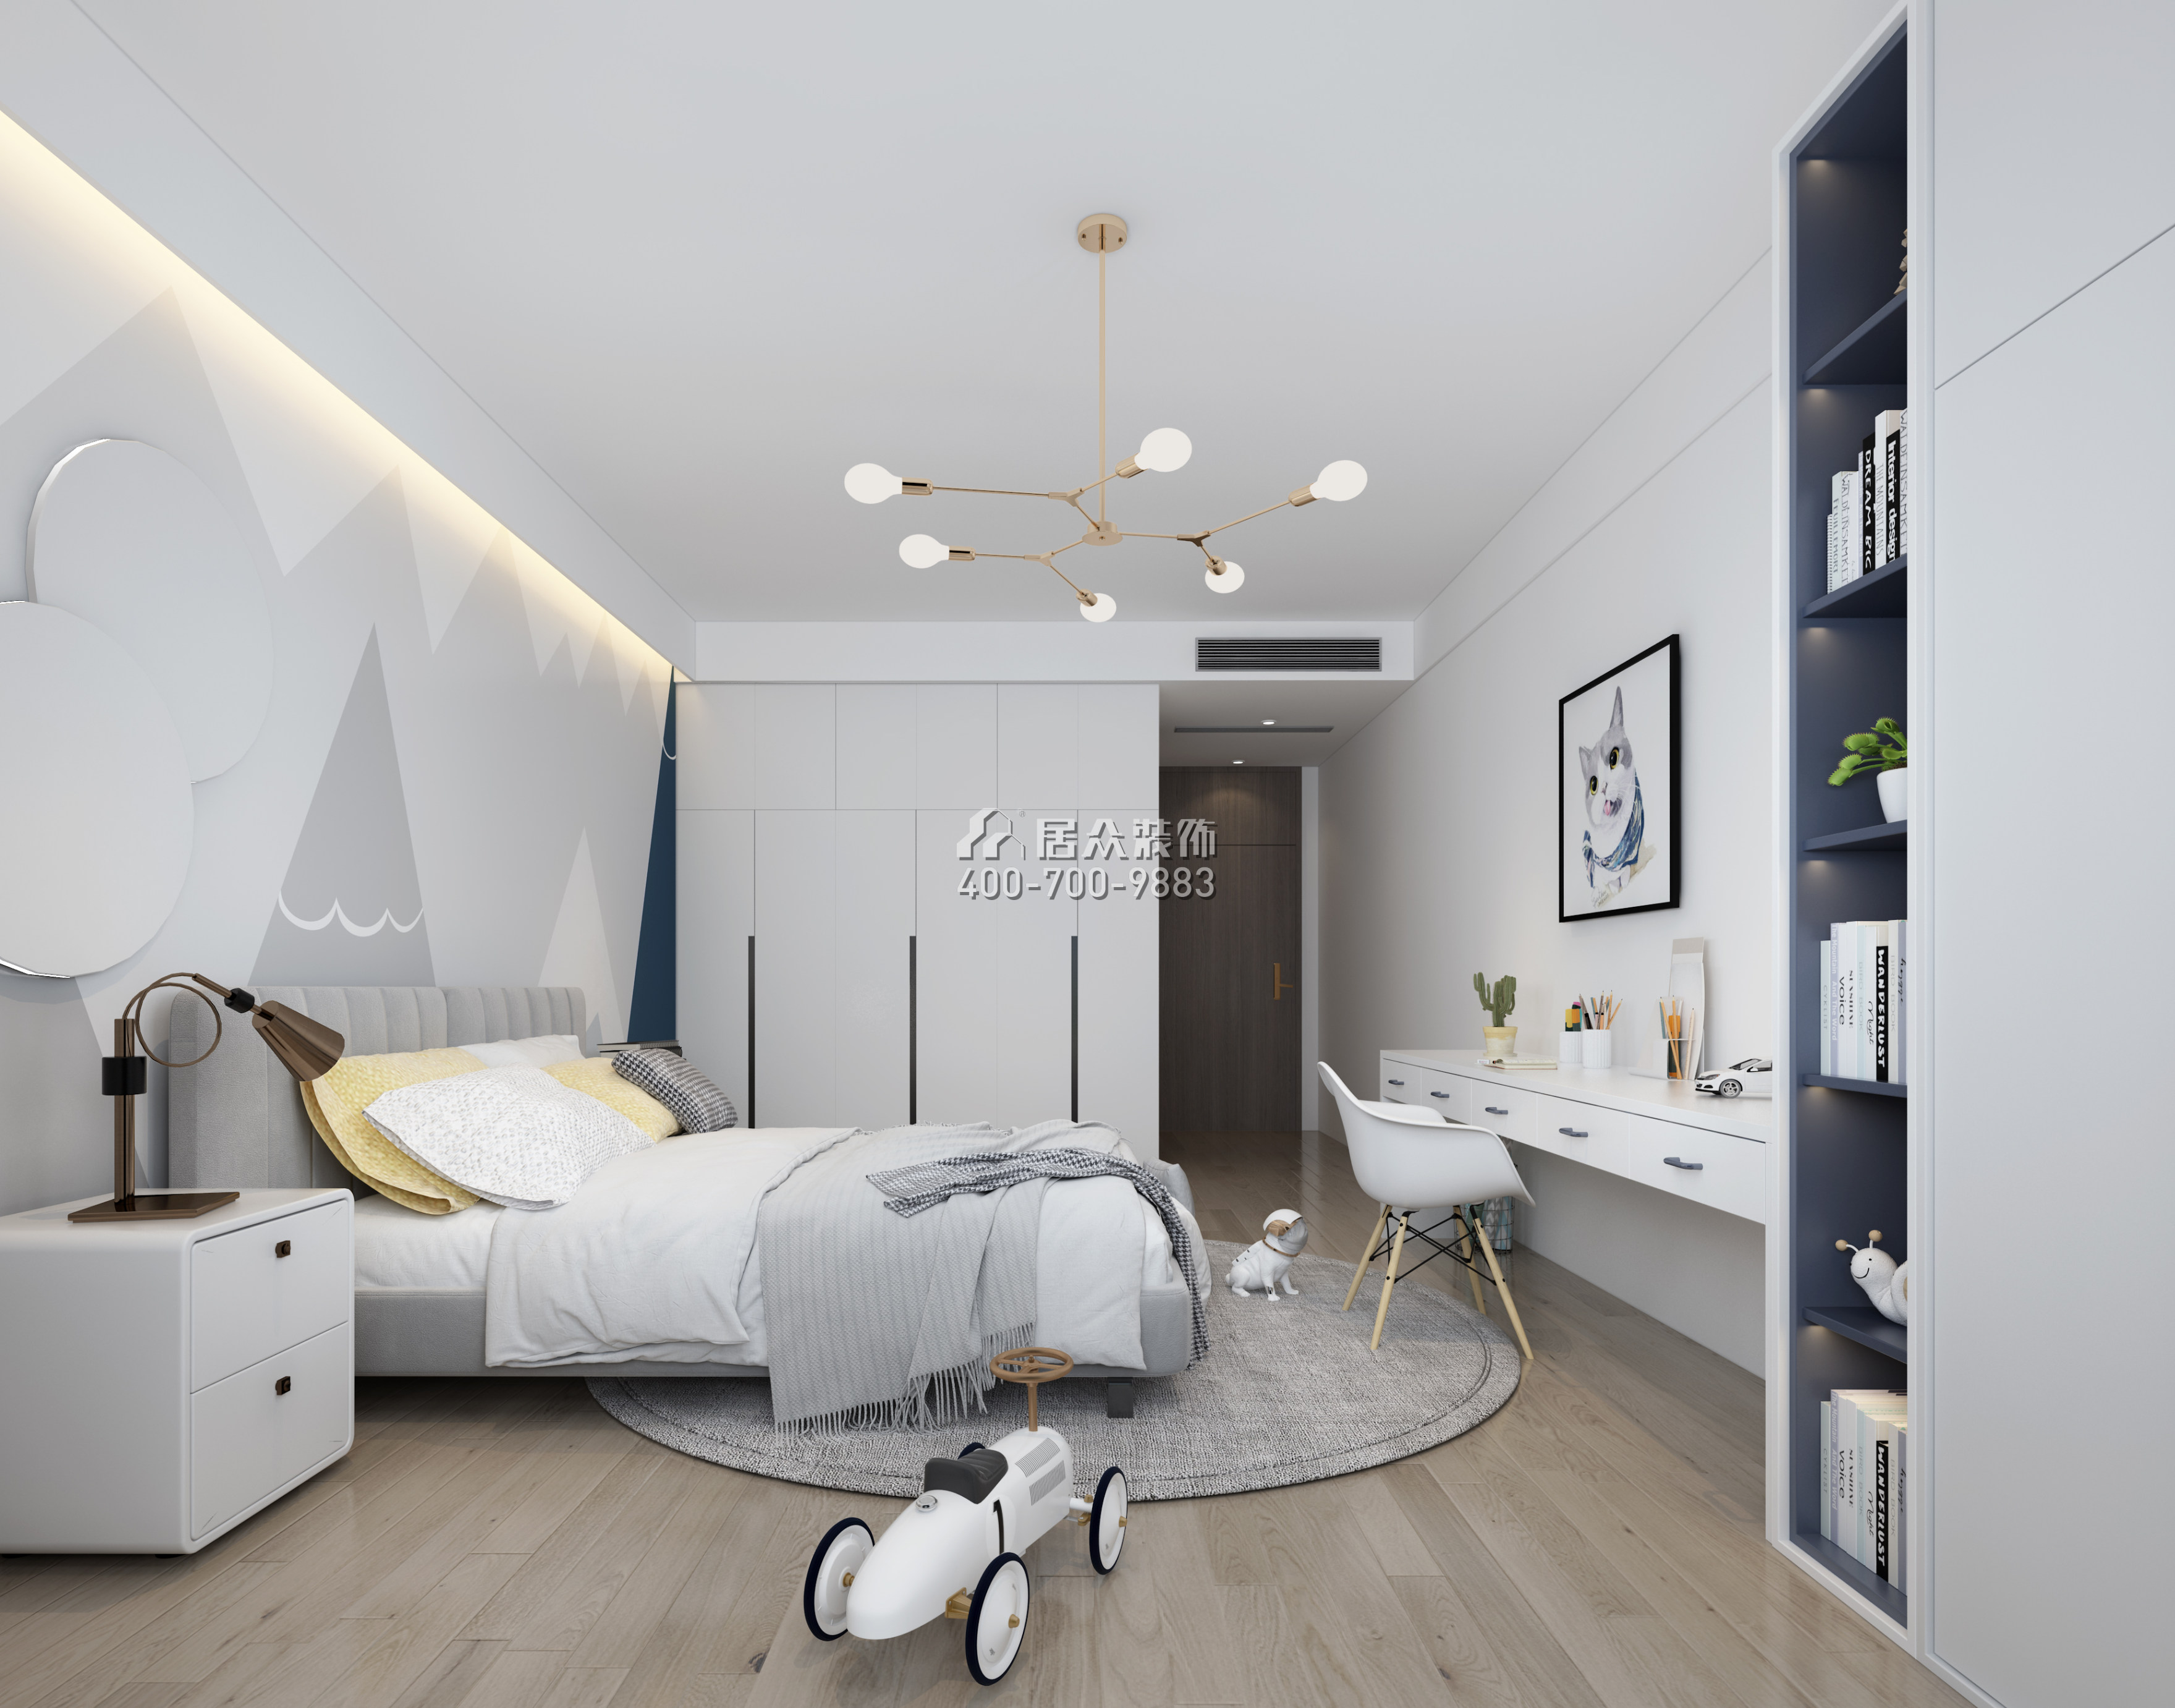 中海银海湾330平方米现代简约风格平层户型卧室装修效果图